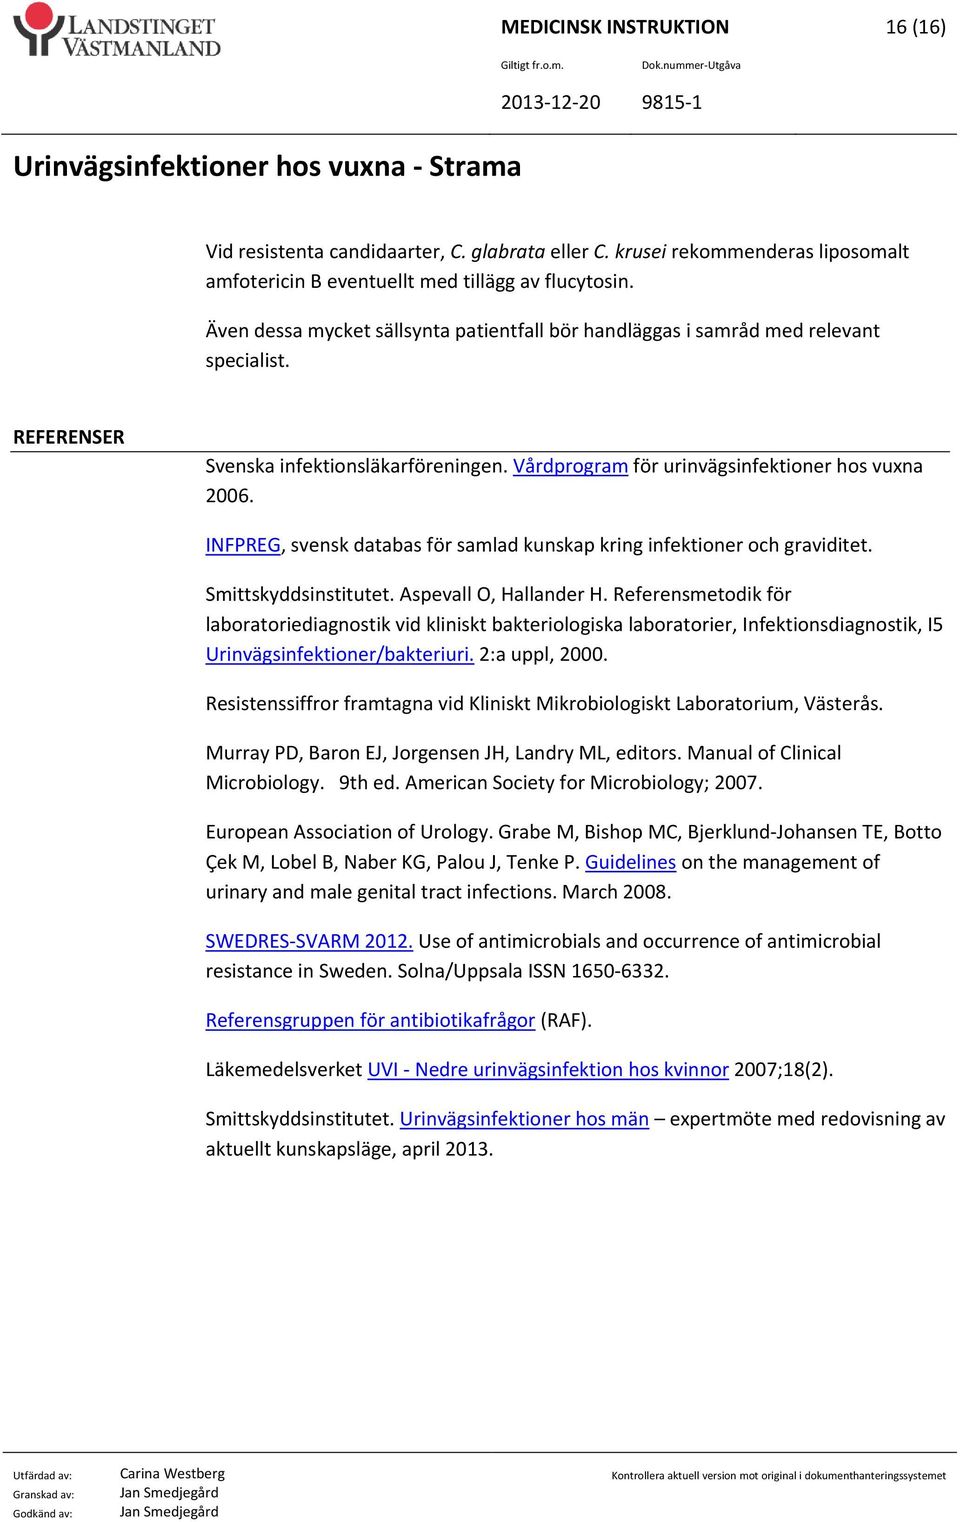 INFPREG, svensk databas för samlad kunskap kring infektioner och graviditet. Smittskyddsinstitutet. Aspevall O, Hallander H.